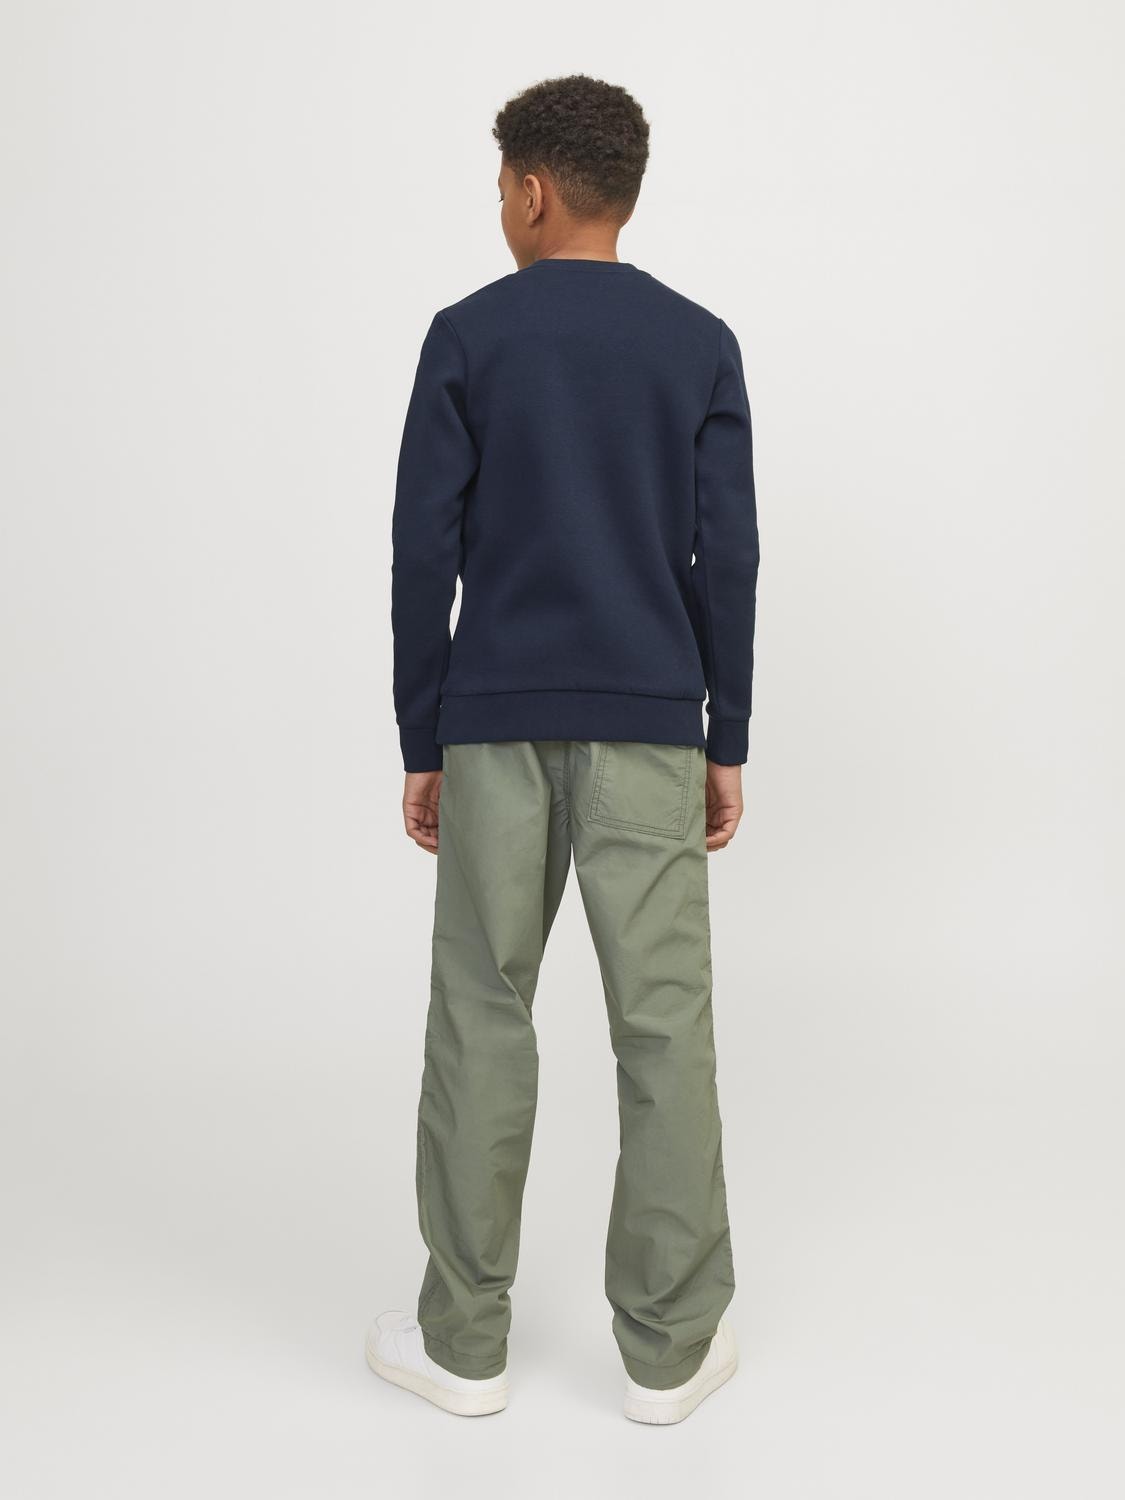 Jack & Jones Gedruckt Sweatshirt mit Rundhals Mini -Navy Blazer - 12257441